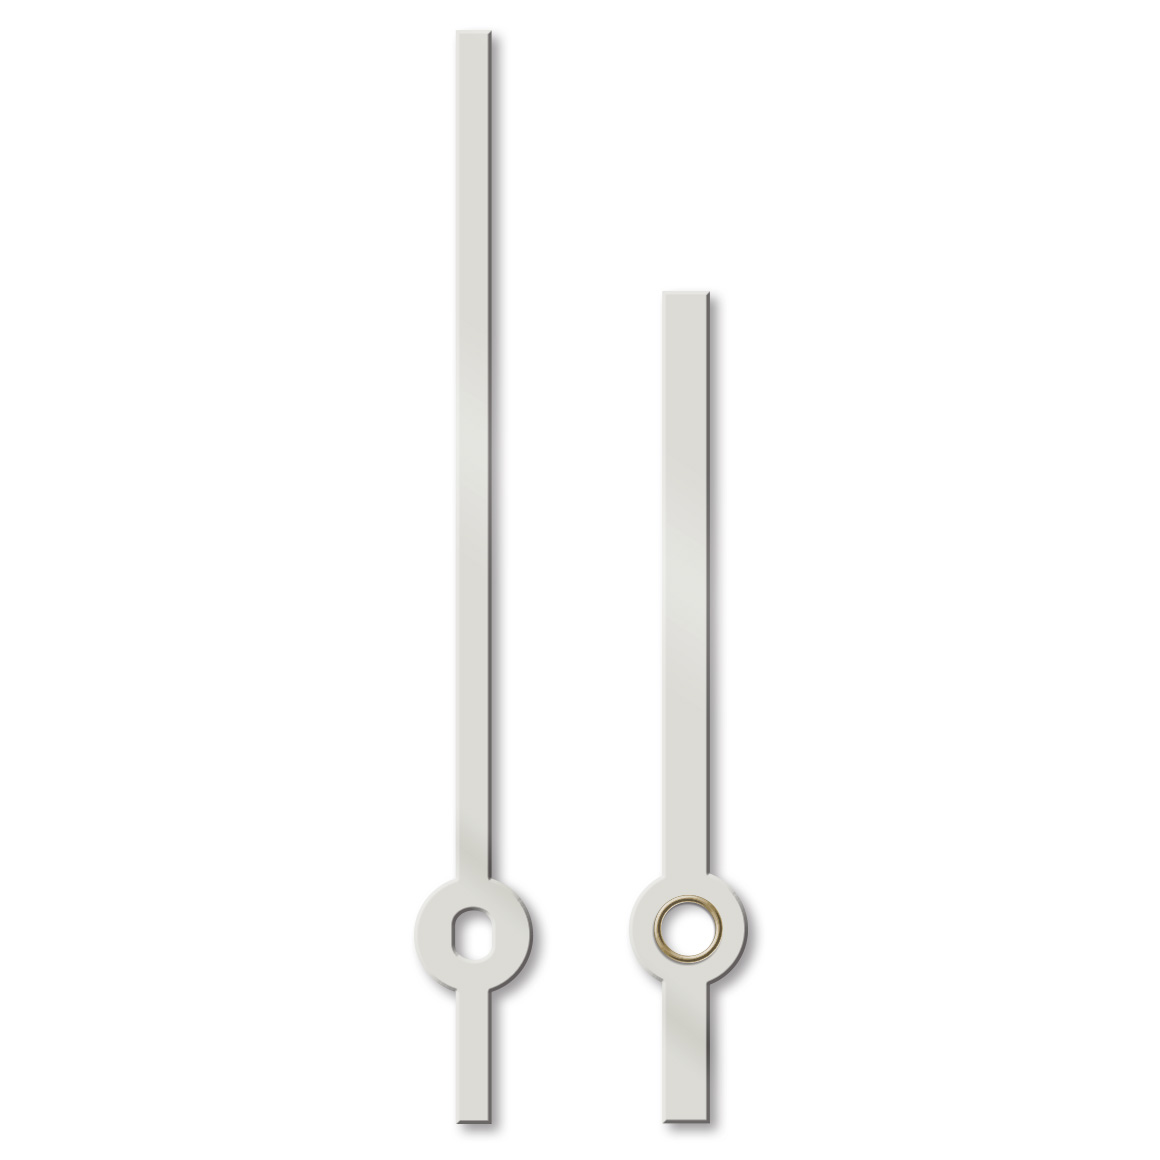 Paire d'aiguilles, baton, longueur 100 mm,
aluminium, blanc, pour grandes horloges